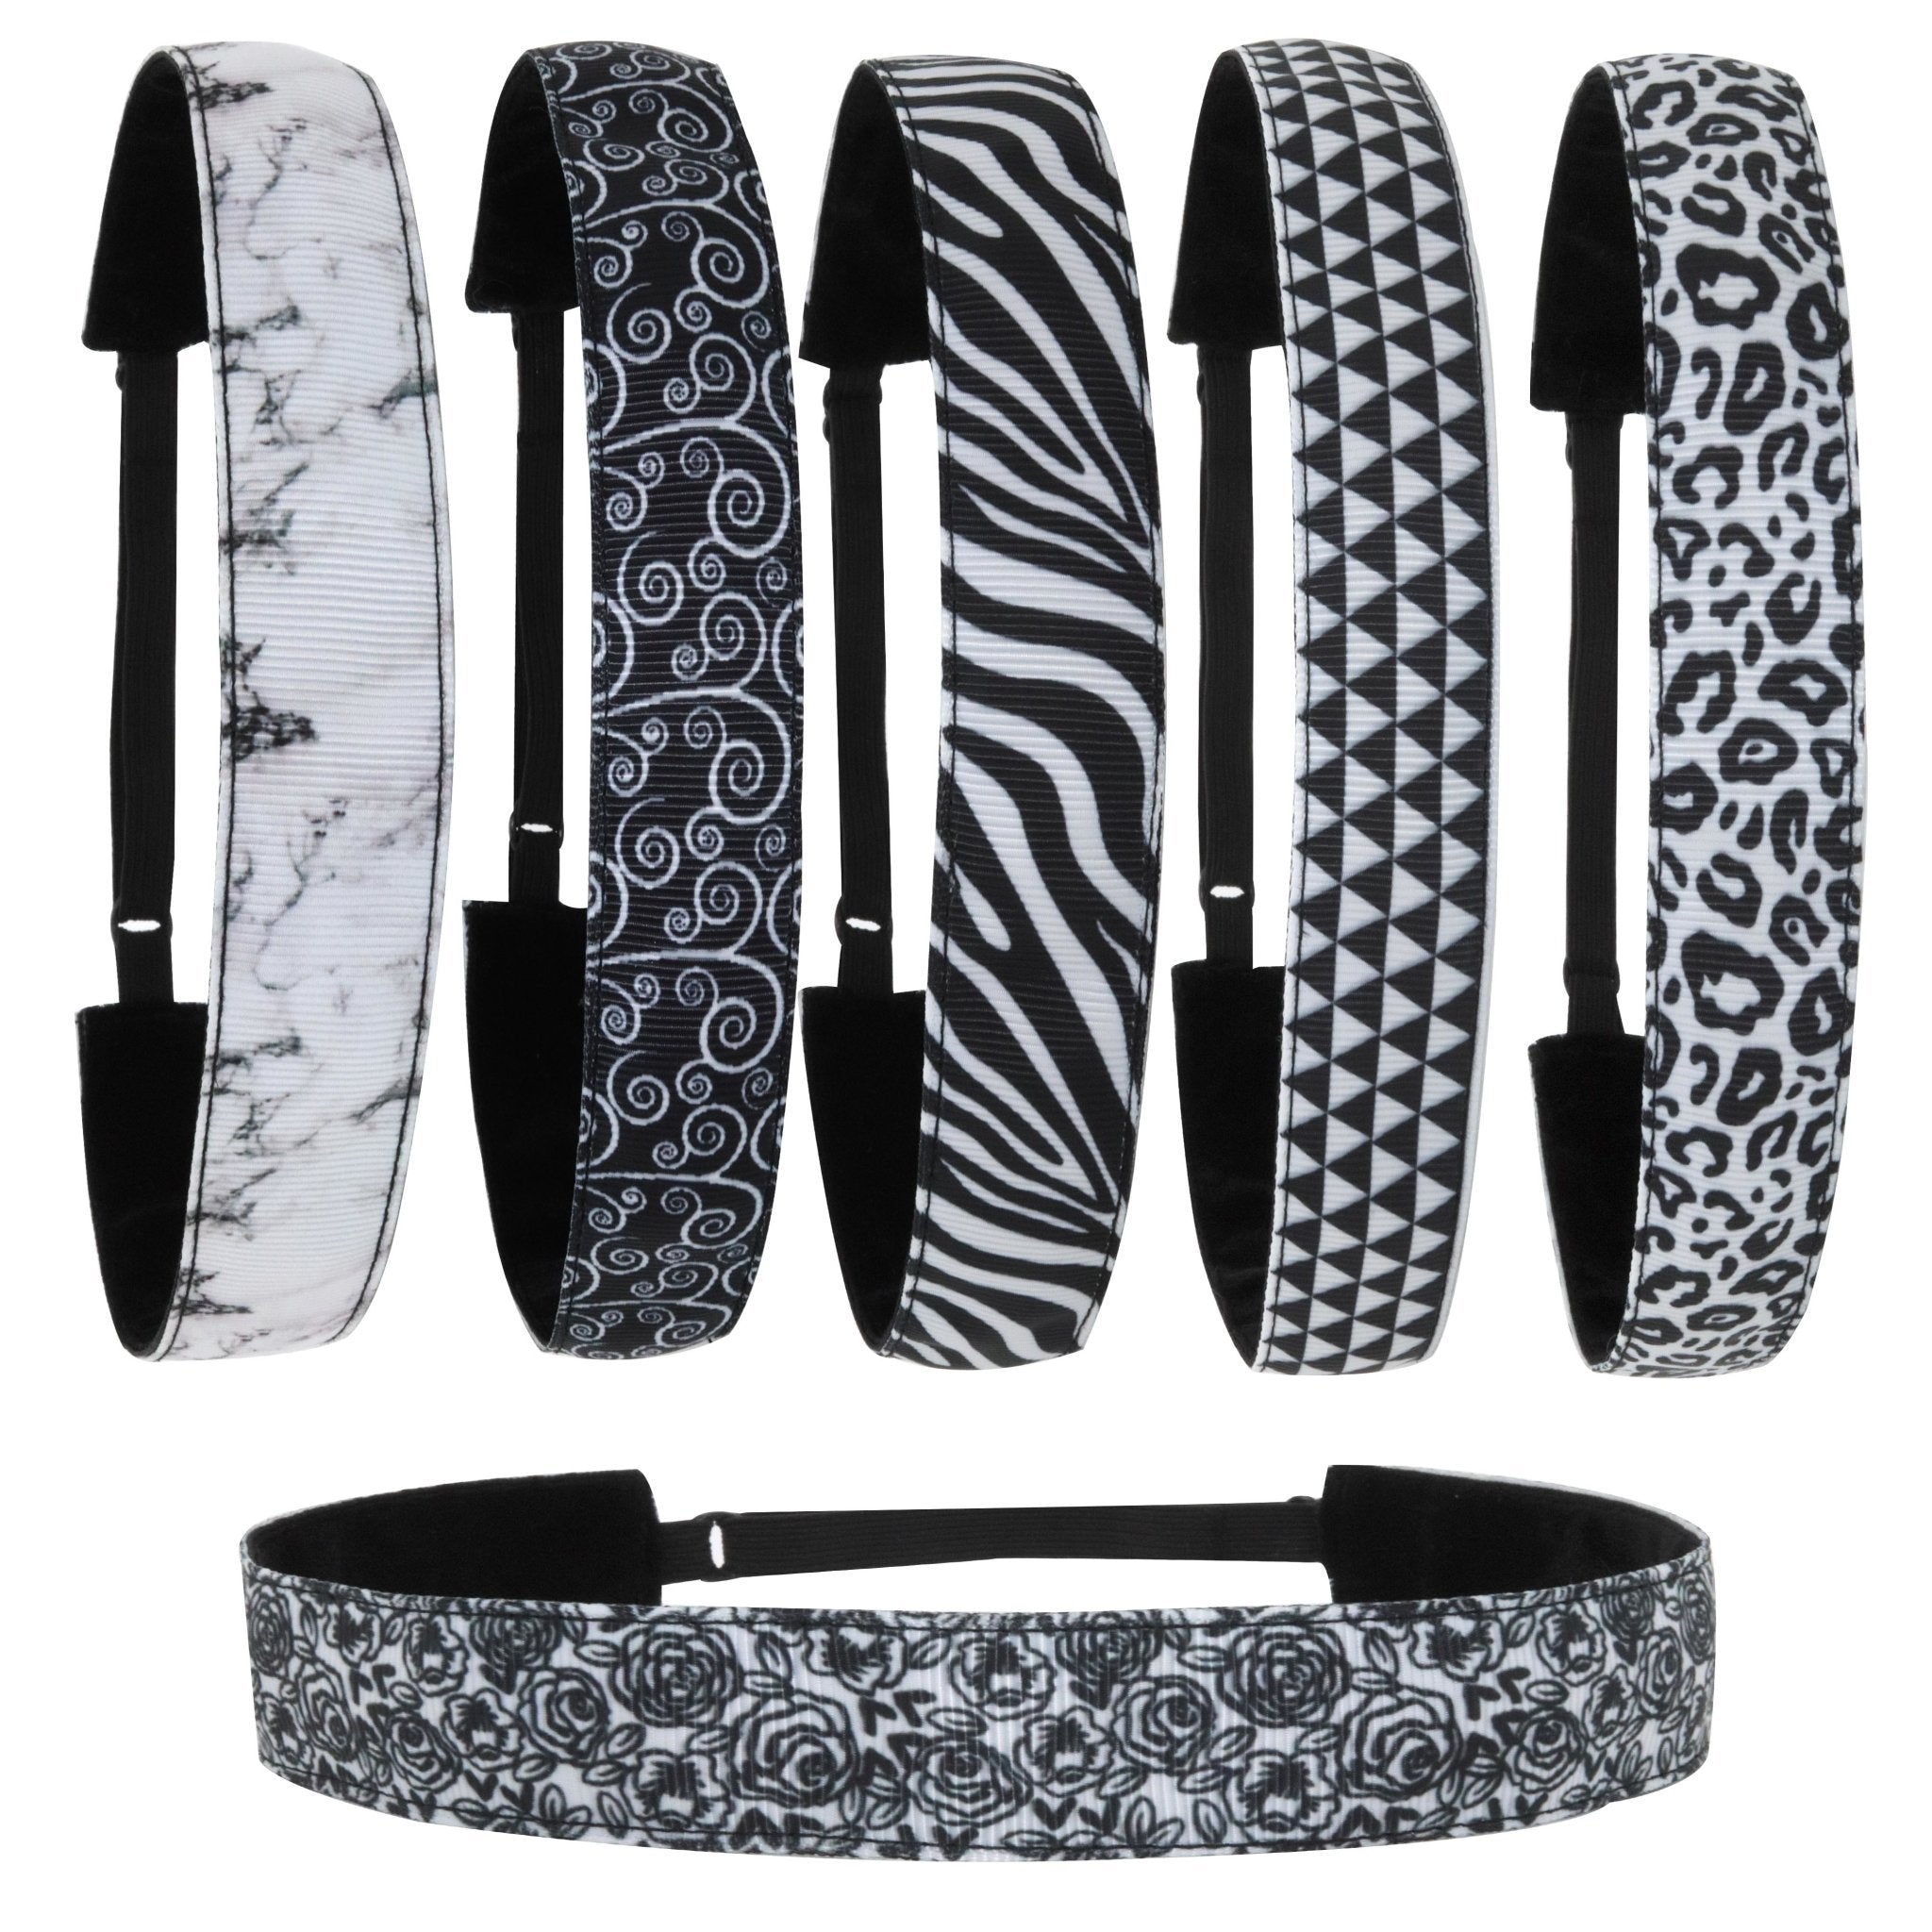 Adjustable No Slip Headbands - Black & White 6 Pack - FROG SAC